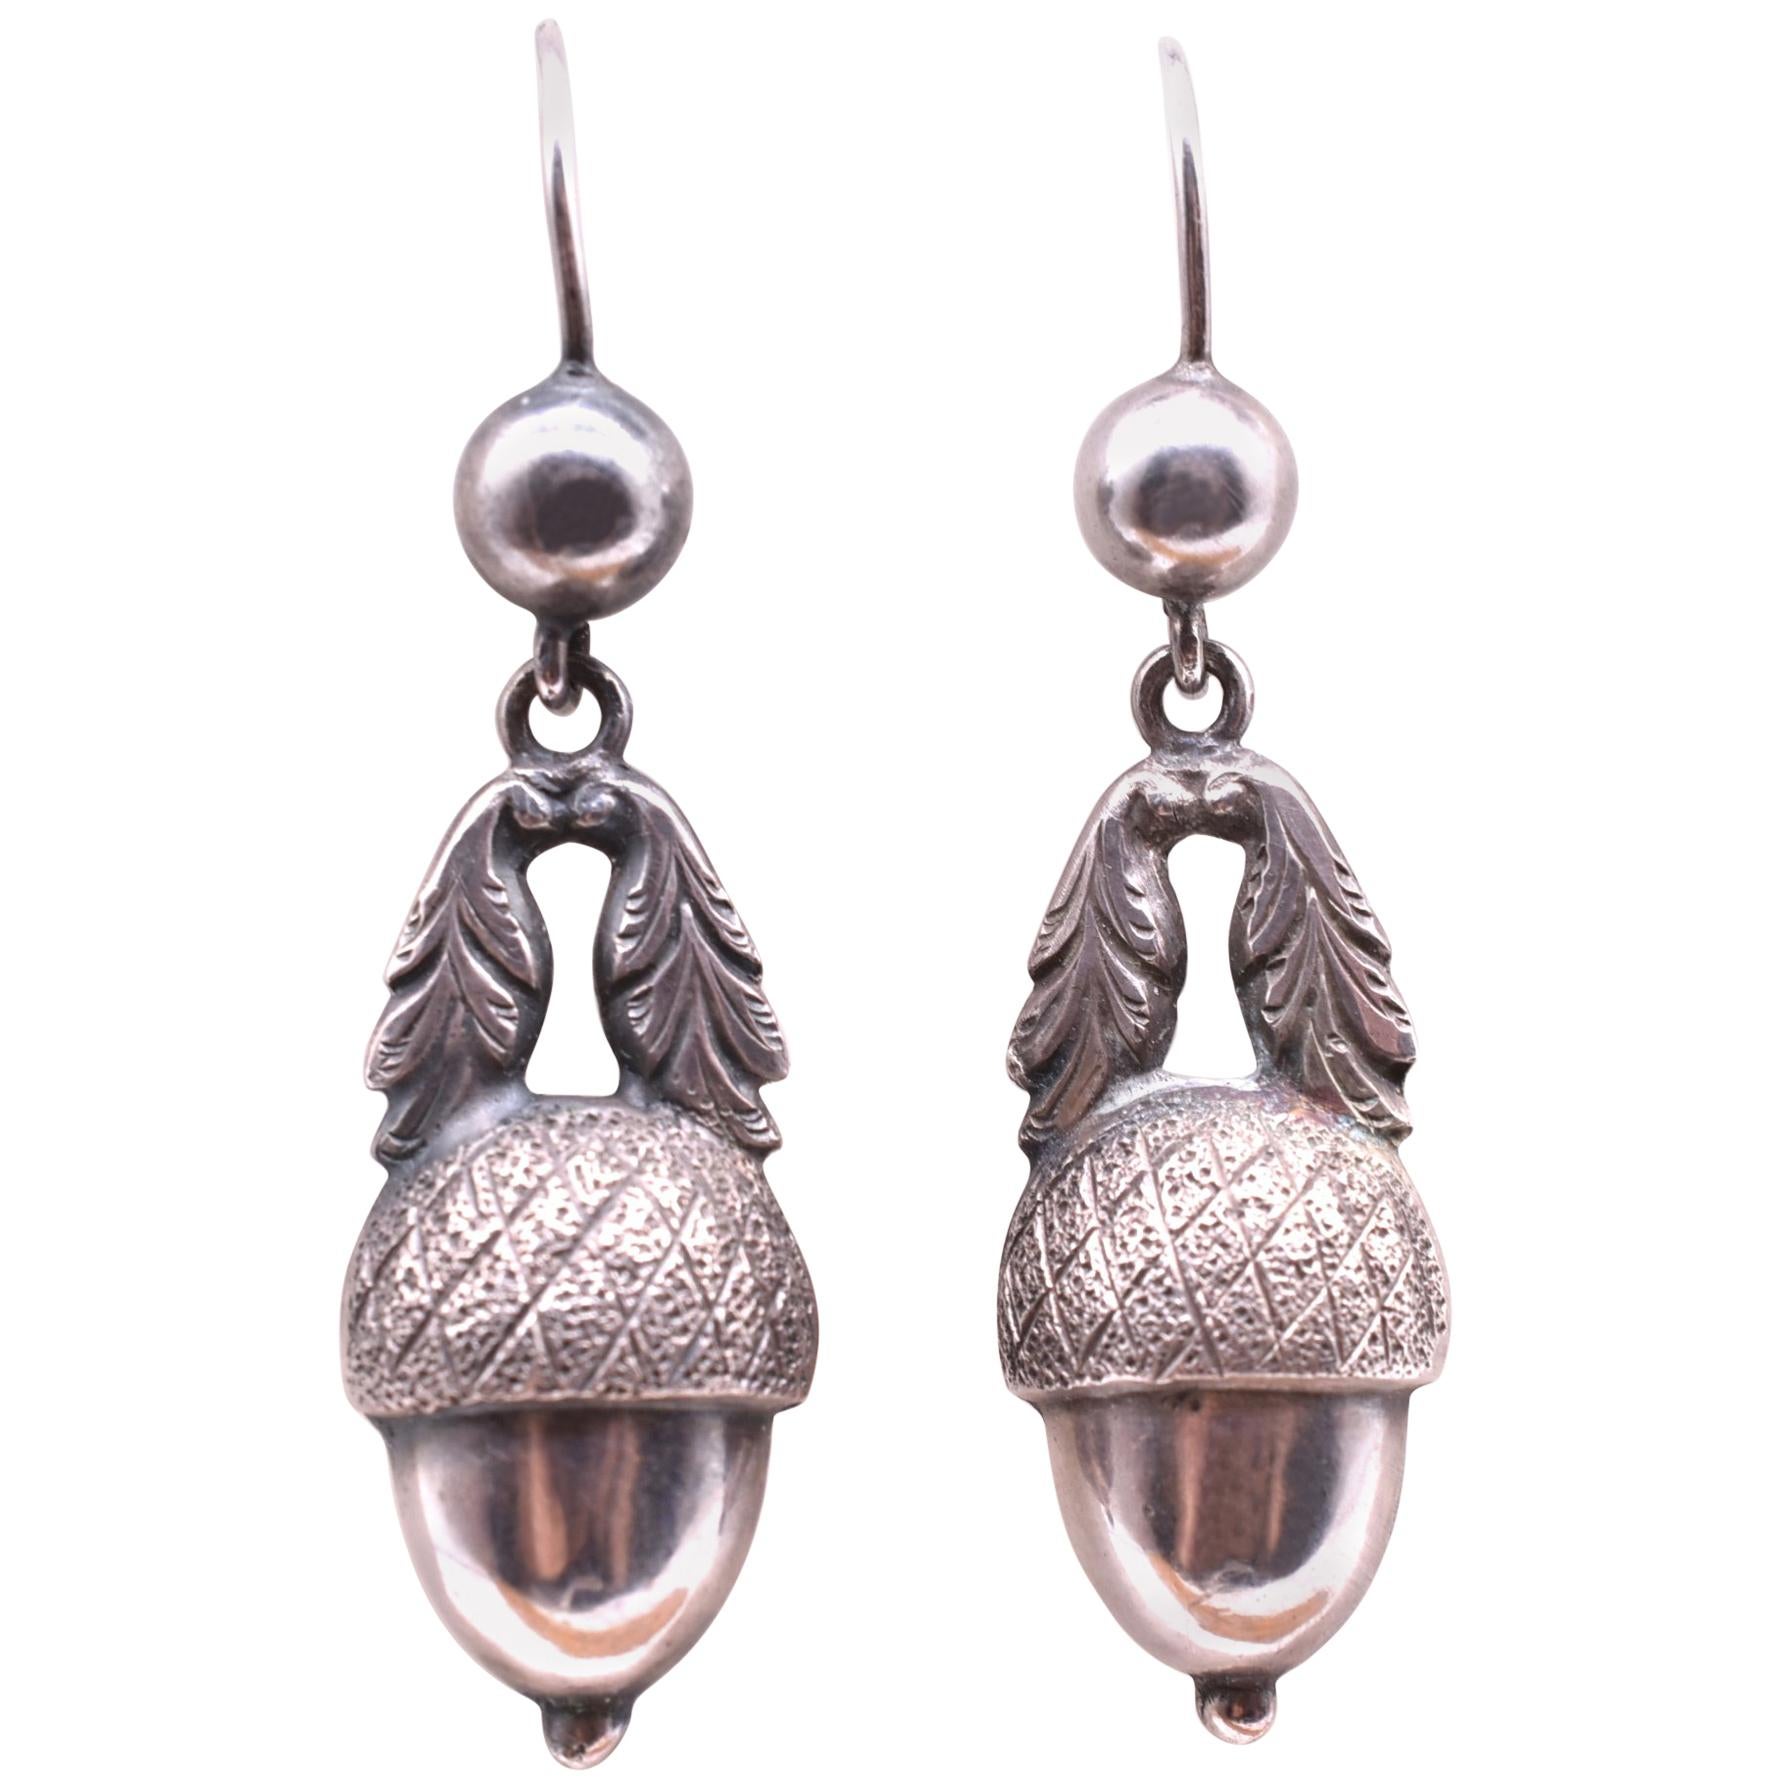 Antique Silver Acorn Earrings